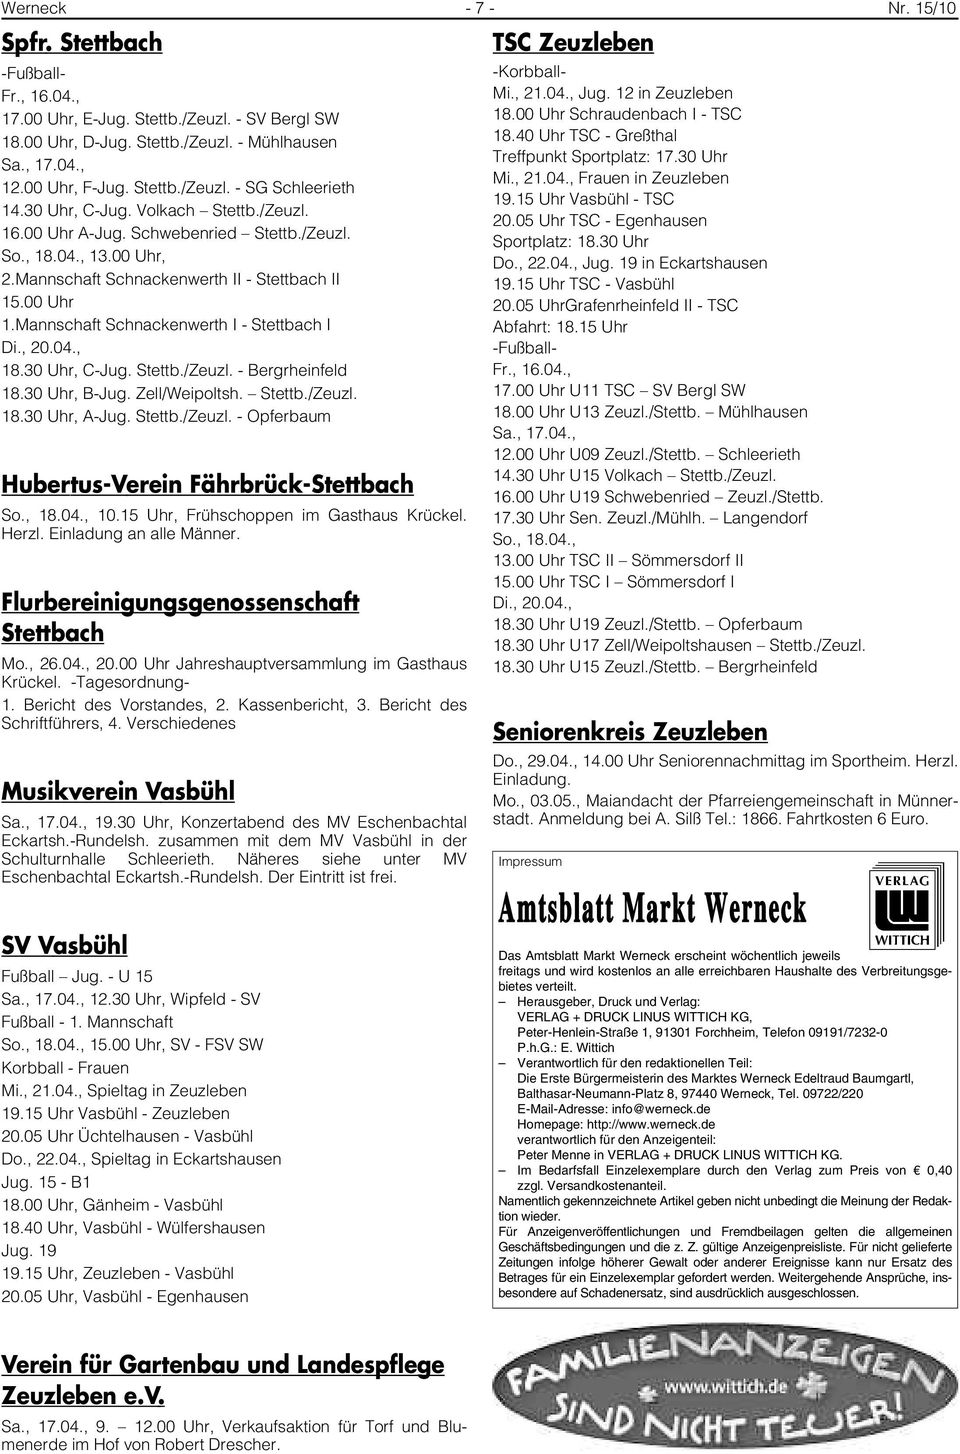 Mannschaft Schnackenwerth I - Stettbach I Di., 20.04., 18.30 Uhr, C-Jug. Stettb./Zeuzl. - Bergrheinfeld 18.30 Uhr, B-Jug. Zell/Weipoltsh. Stettb./Zeuzl. 18.30 Uhr, A-Jug. Stettb./Zeuzl. - Opferbaum Hubertus-Verein Fährbrück-Stettbach So.